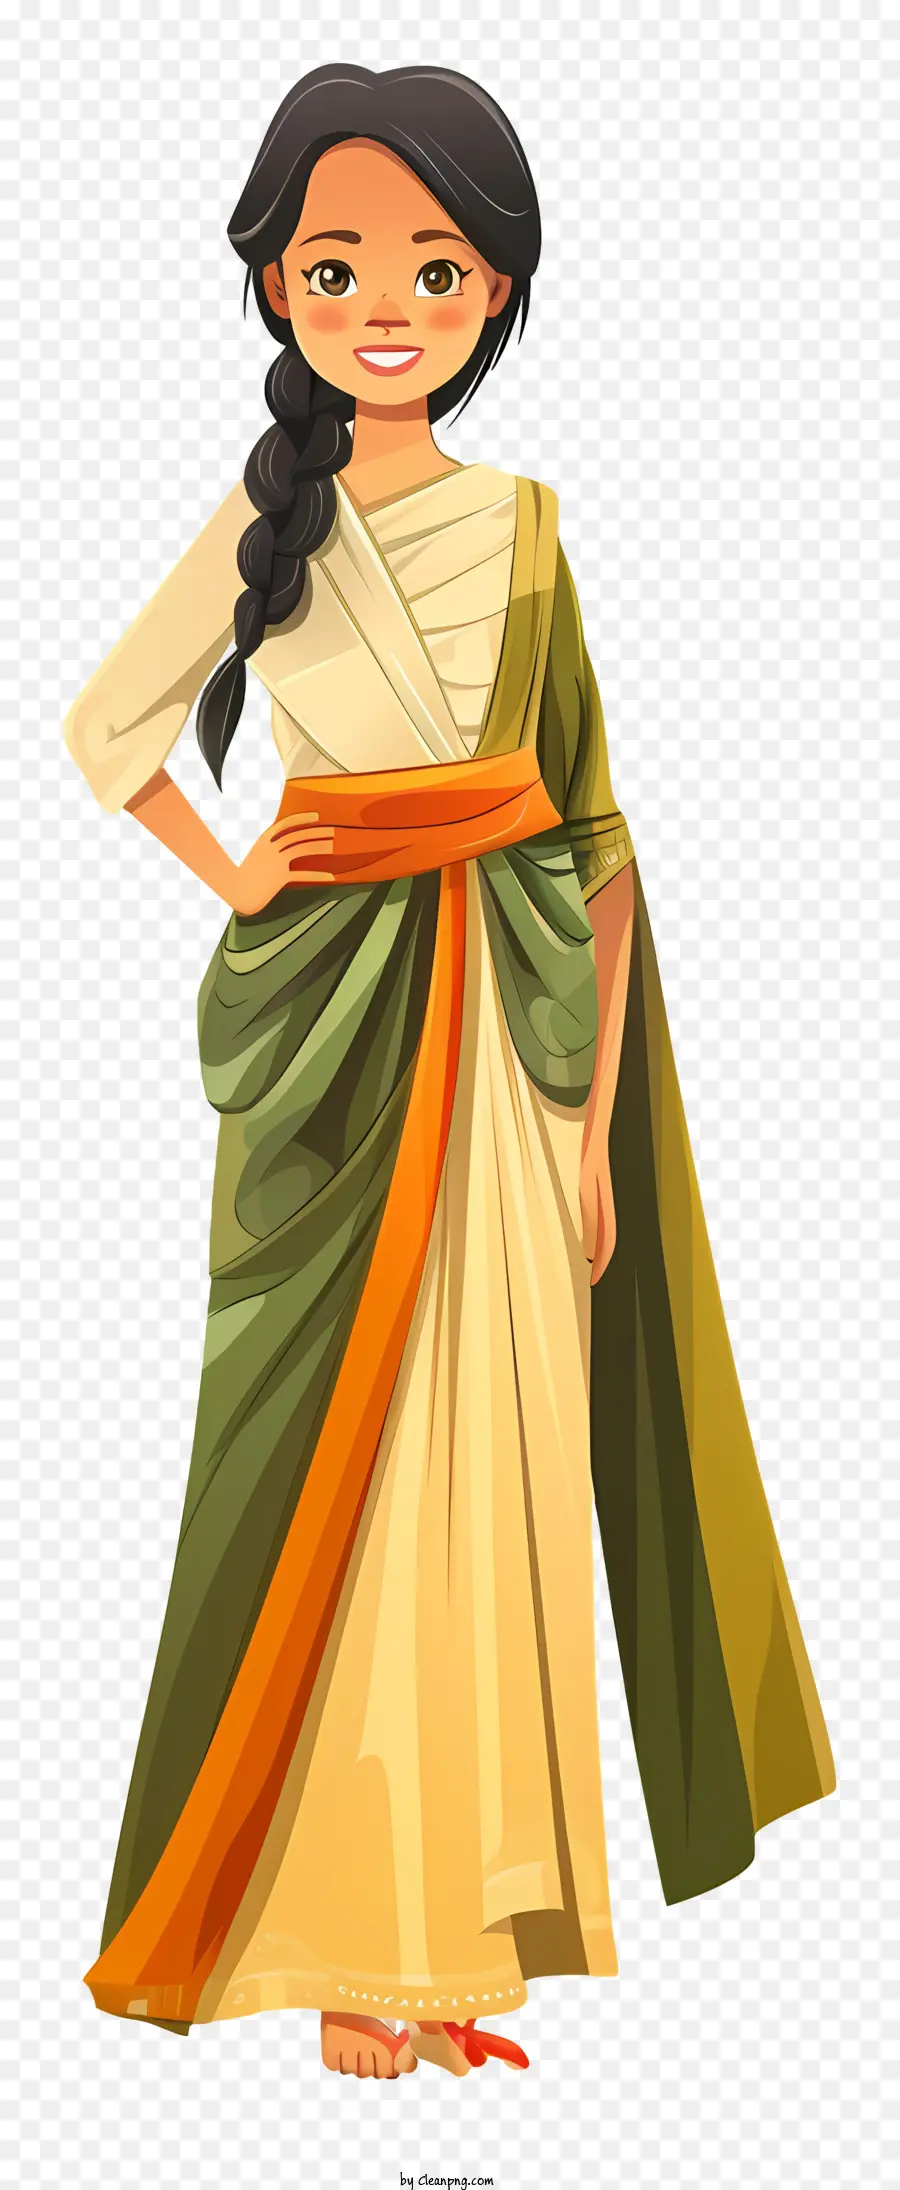 Kambodschanische Frau Cartoon Sari Indian Mode Traditioneller Kleidung Schmuck Schmuck - Frau im eleganten Sari mit selbstbewusstem Ausdruck